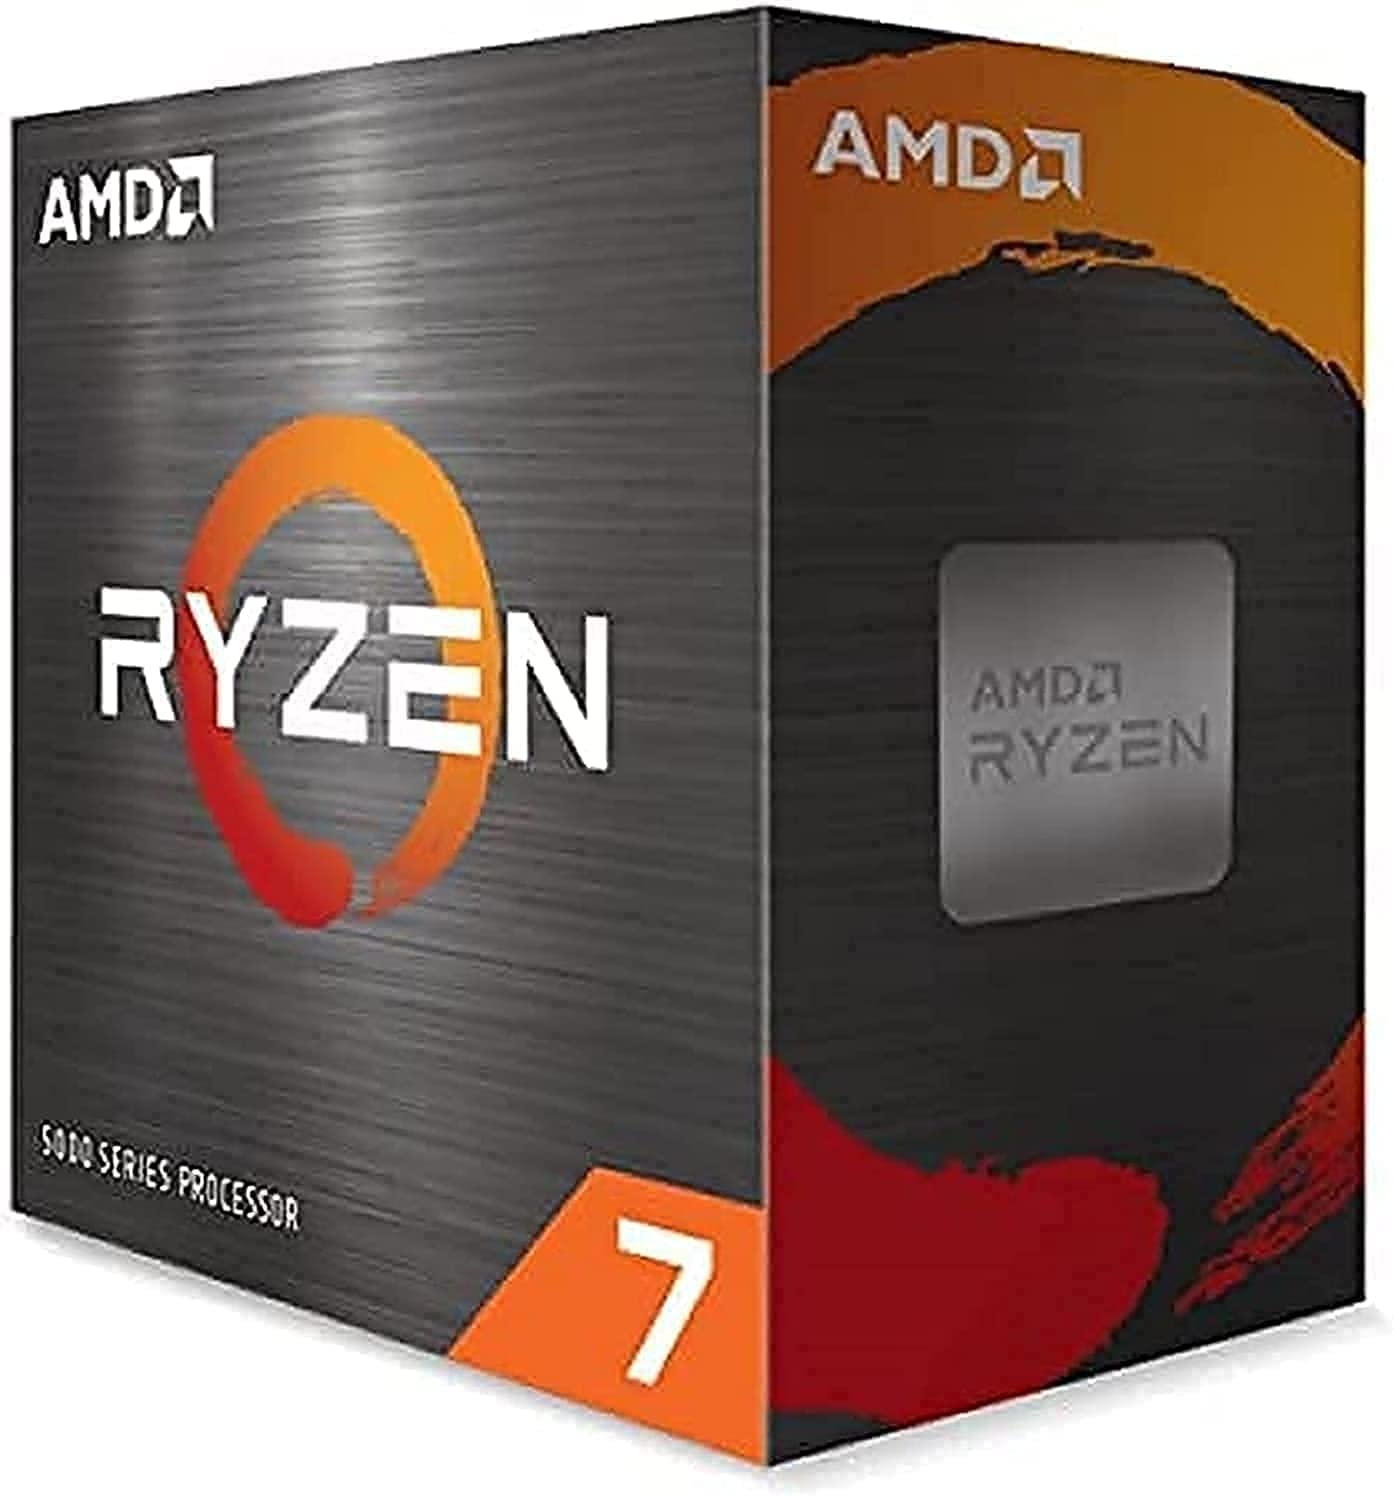 AMD Ryzen 7 5700X versus AMD Ryzen7 5700G versus AMD Ryzen 7 5800X versus AMD Ryzen 7 5800X 3D